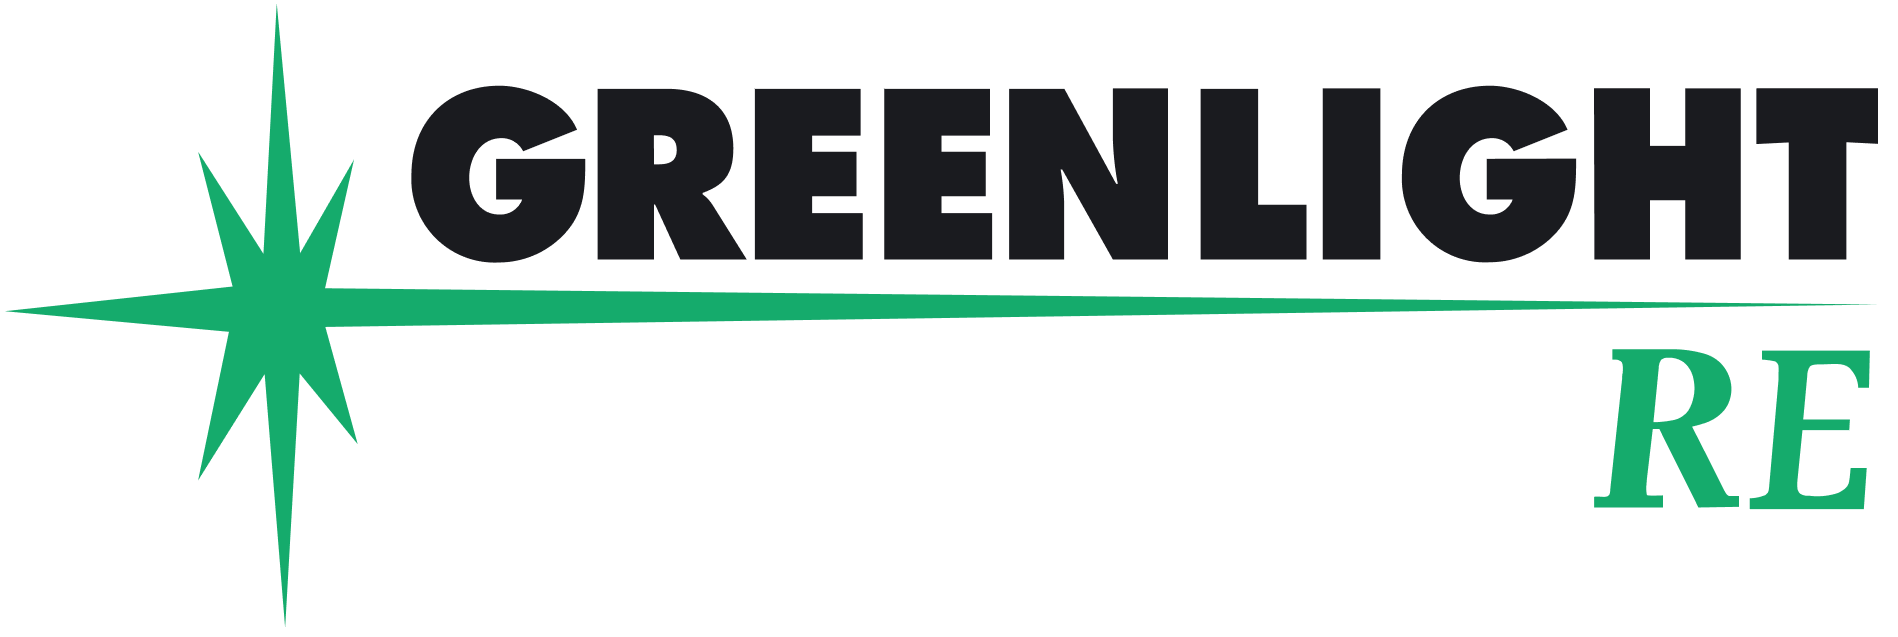 Greenlight Re logo